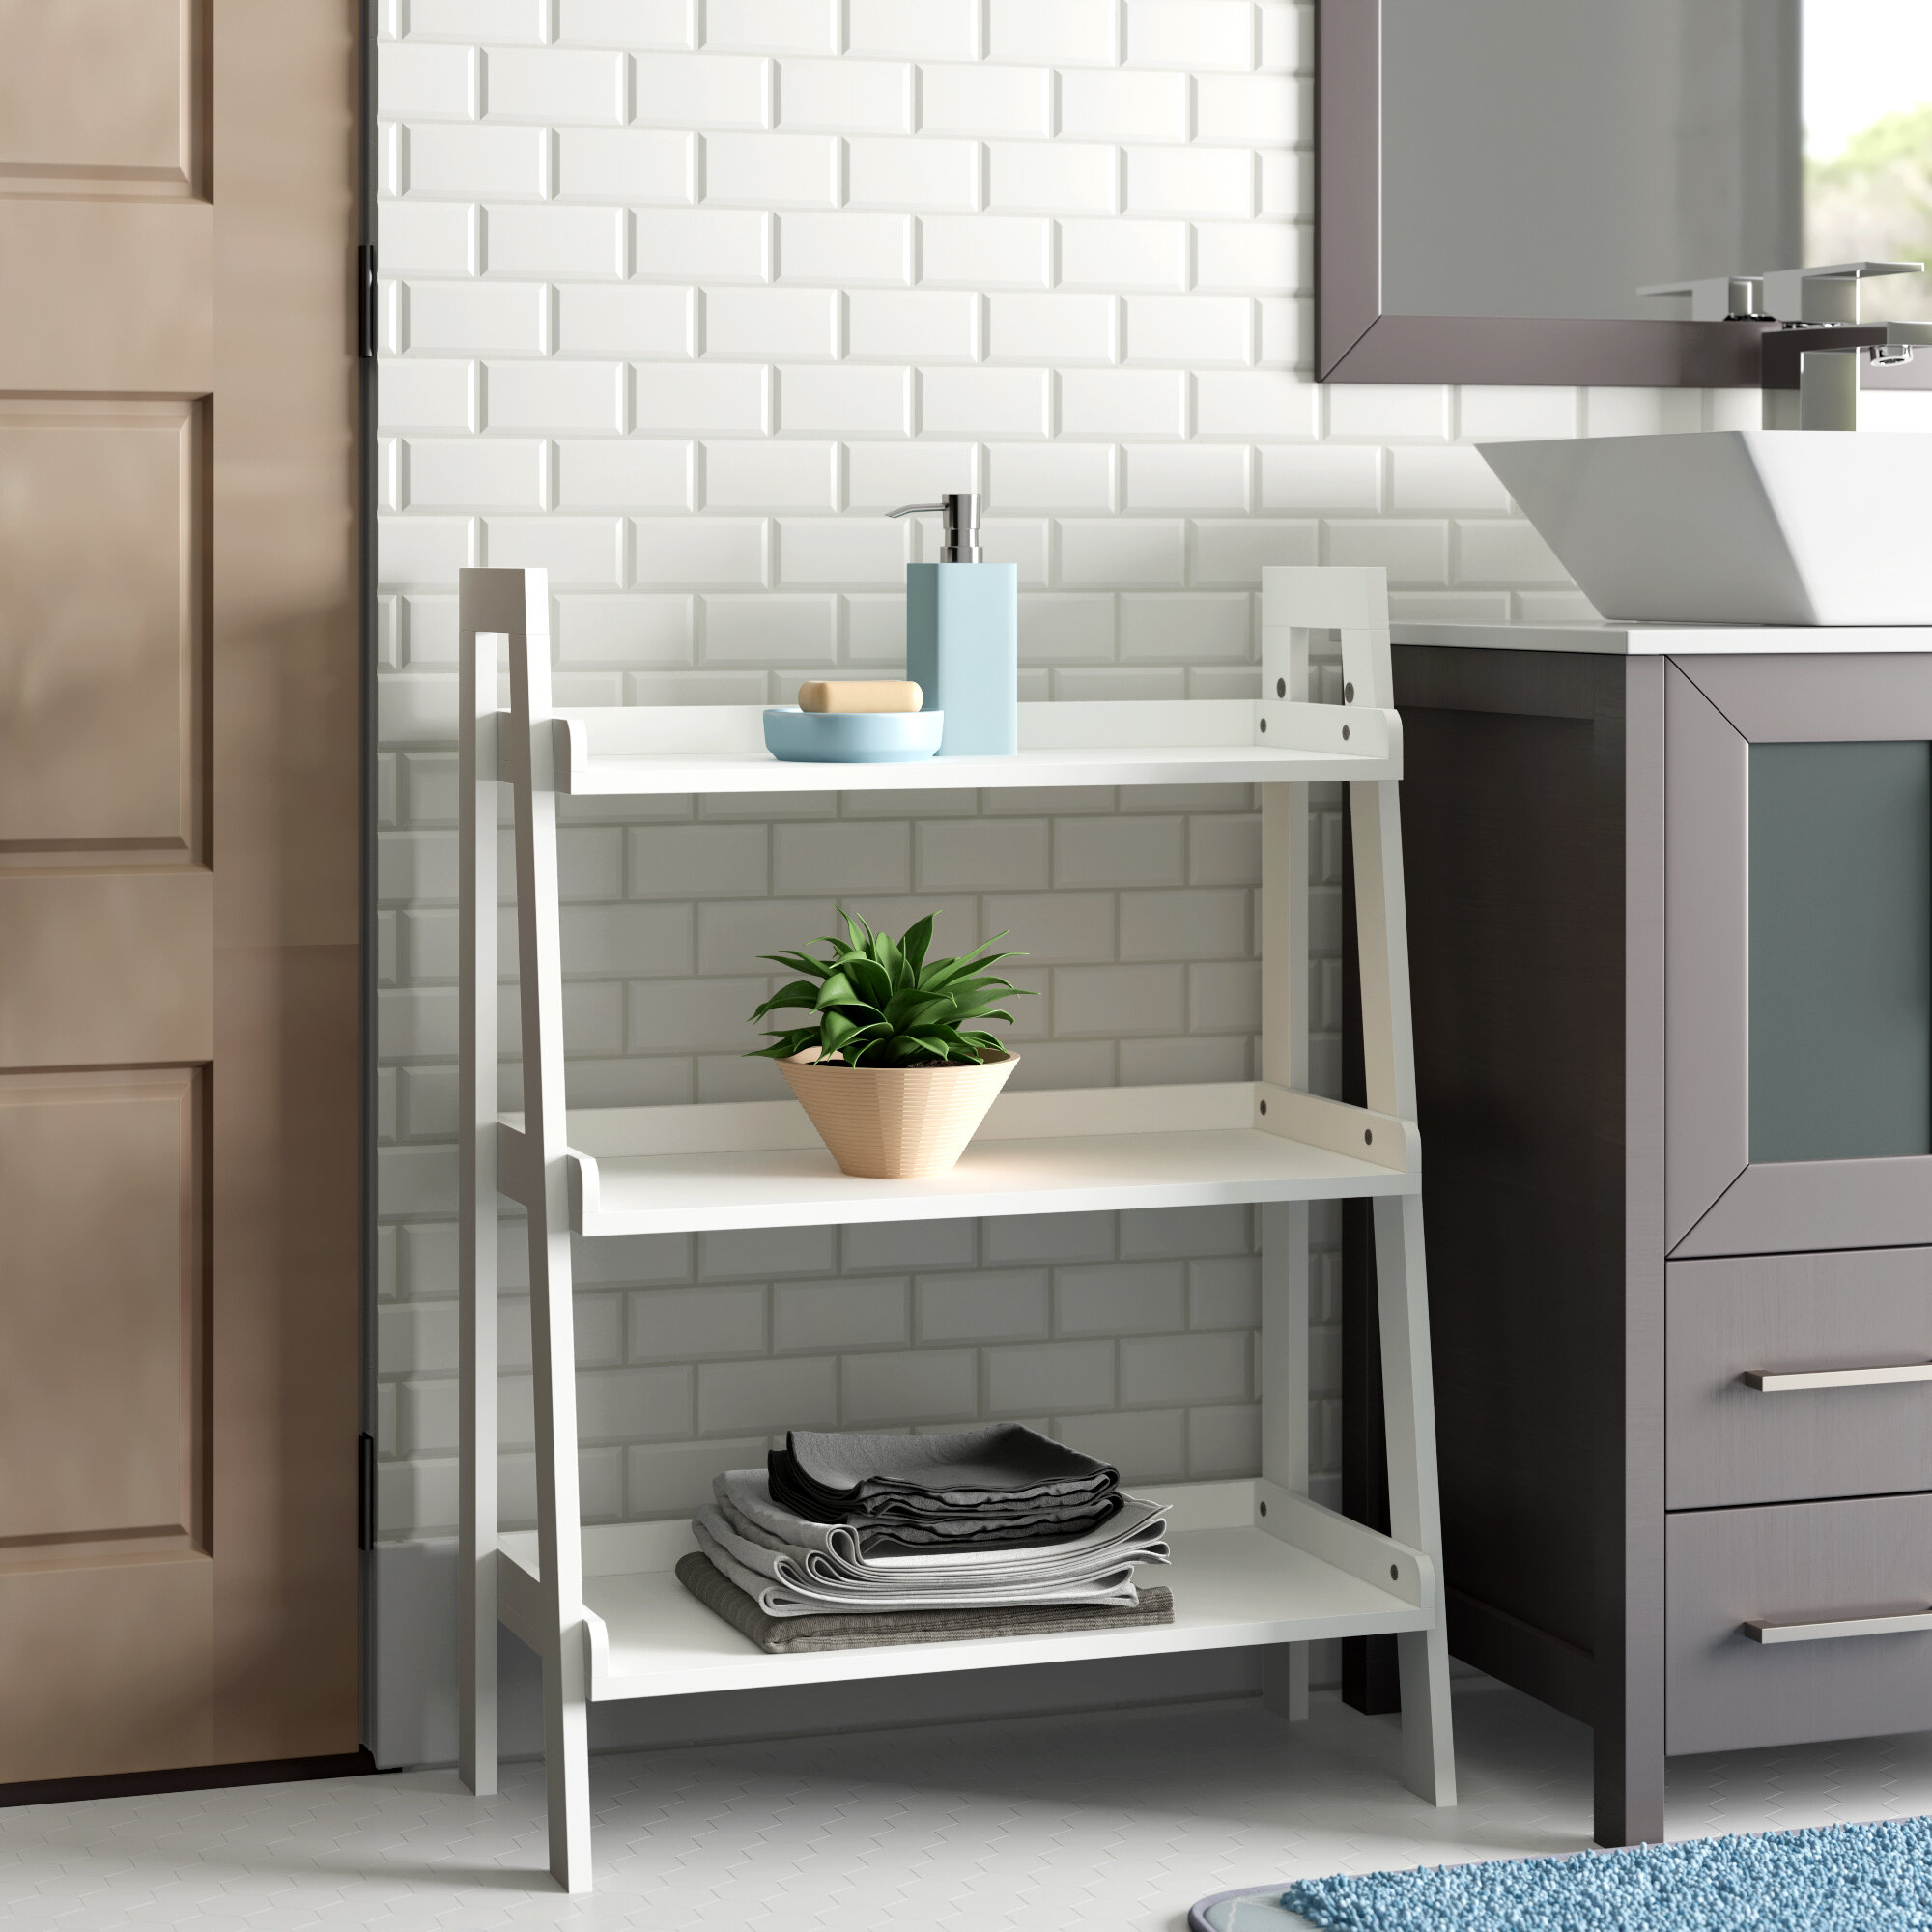 Zipcode Design Hoschton 24 W X 32 5 H X 11 5 D Free Standing Bathroom Shelves Reviews Wayfair